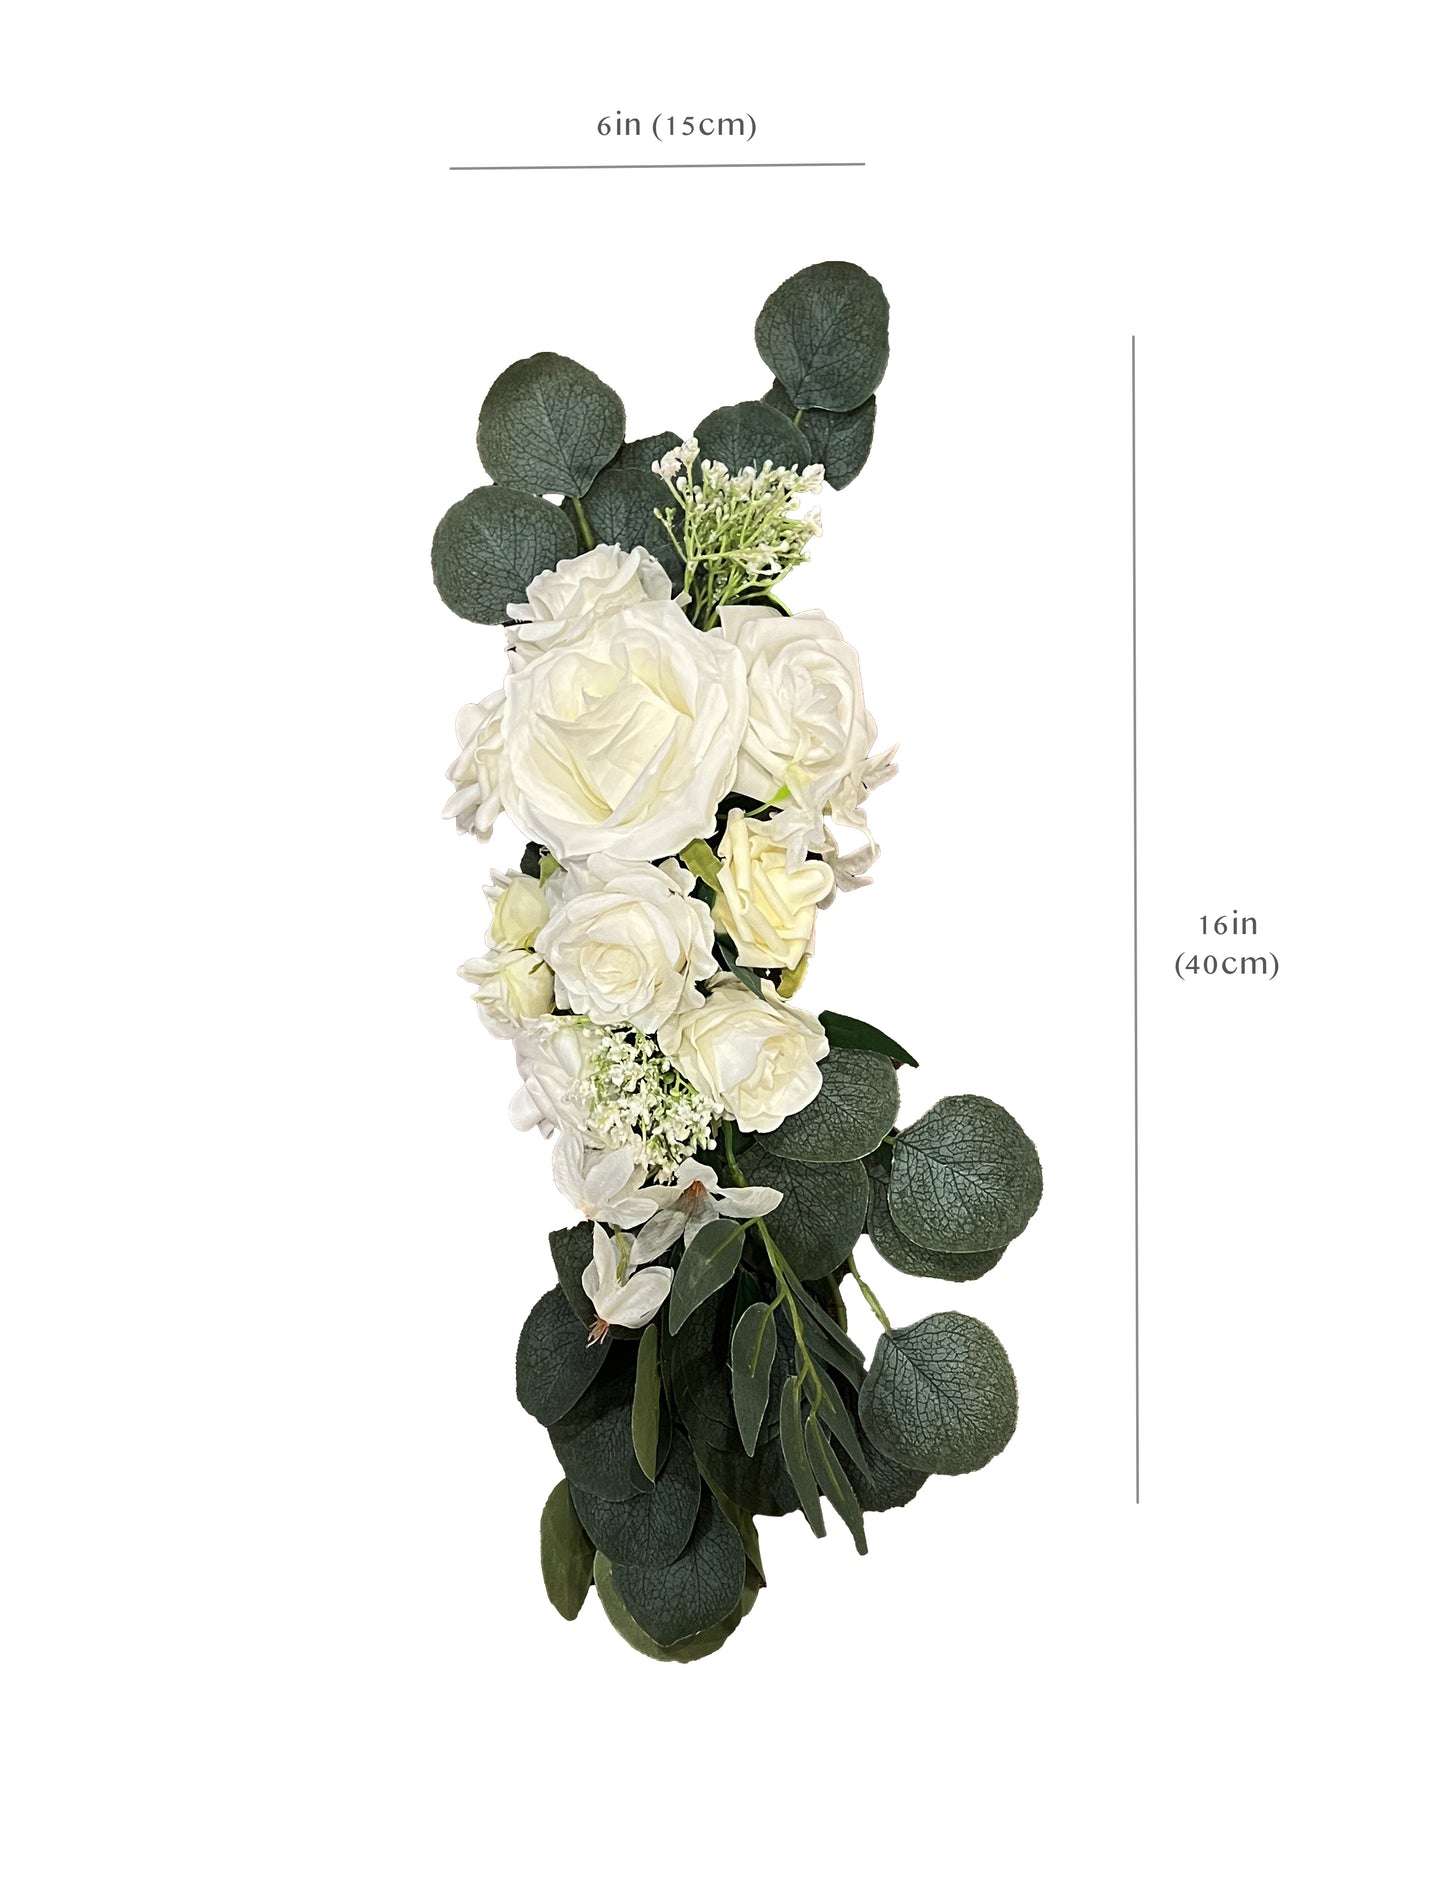 Artificial White Rose and Eucalyptus Wedding Arch Backdrop Decor - Set of 2